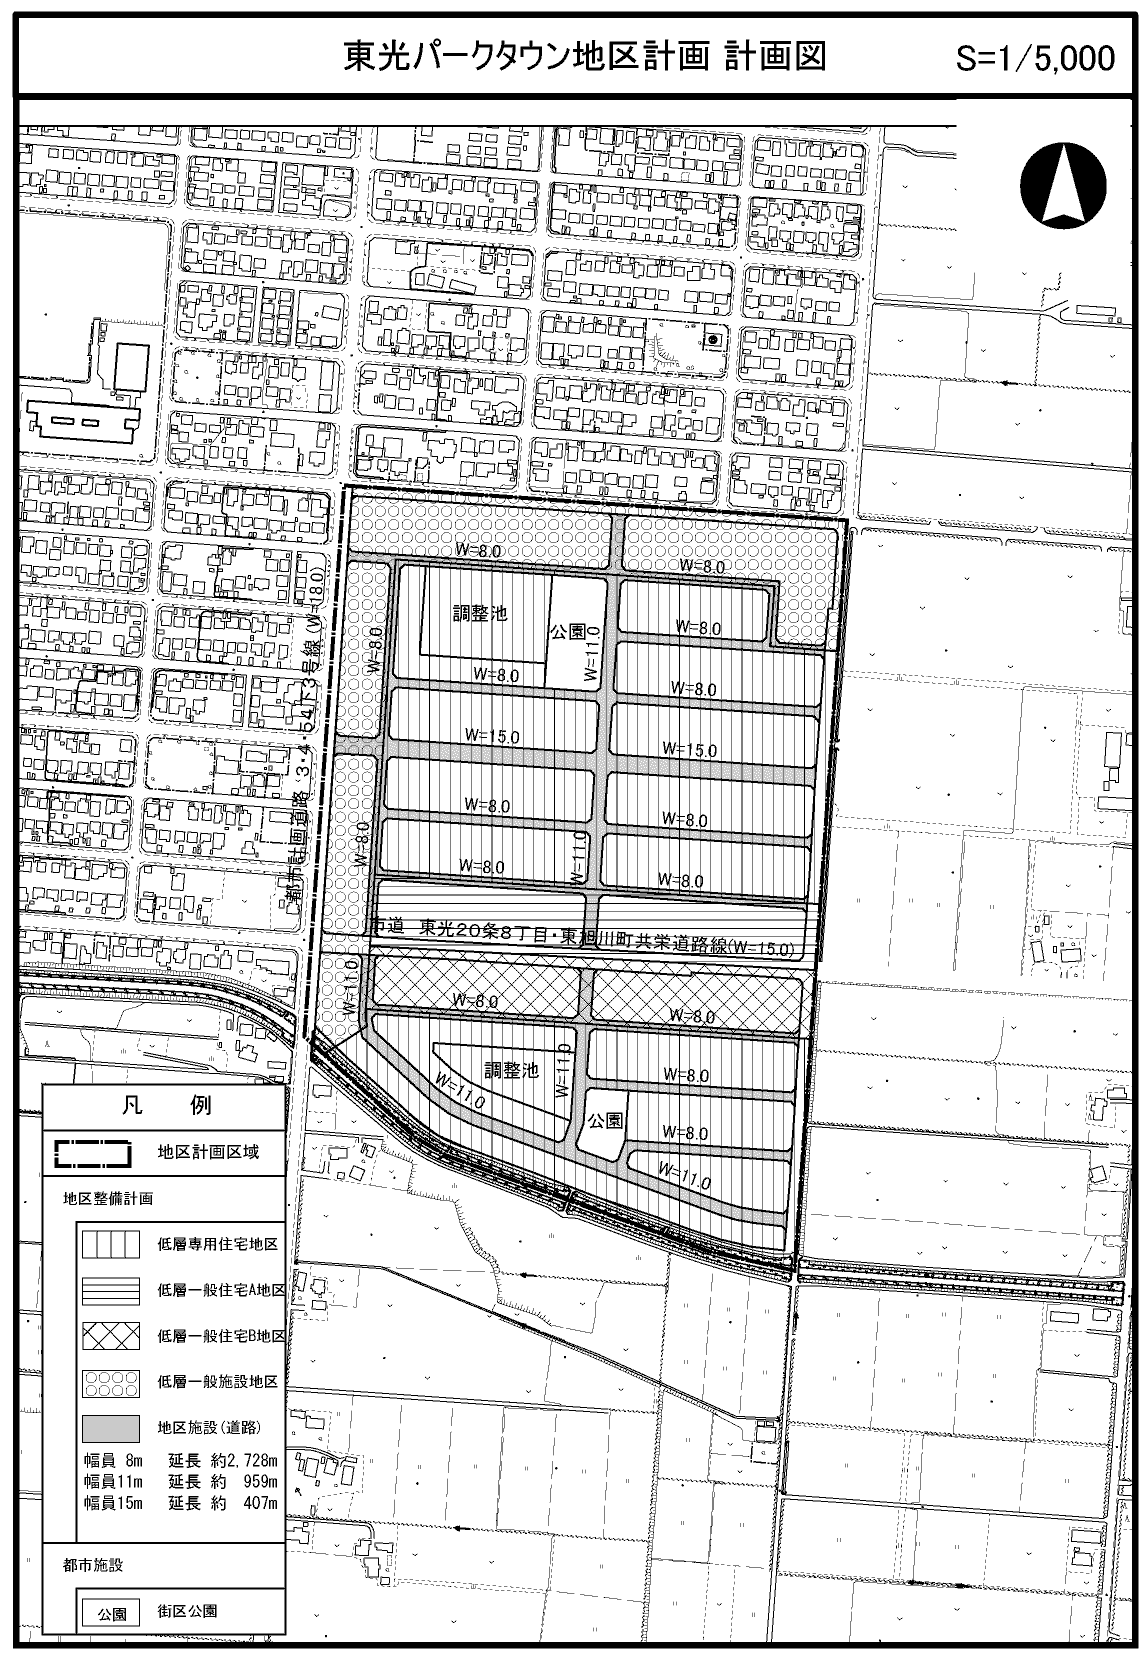 東光パークタウン地区計画計画図